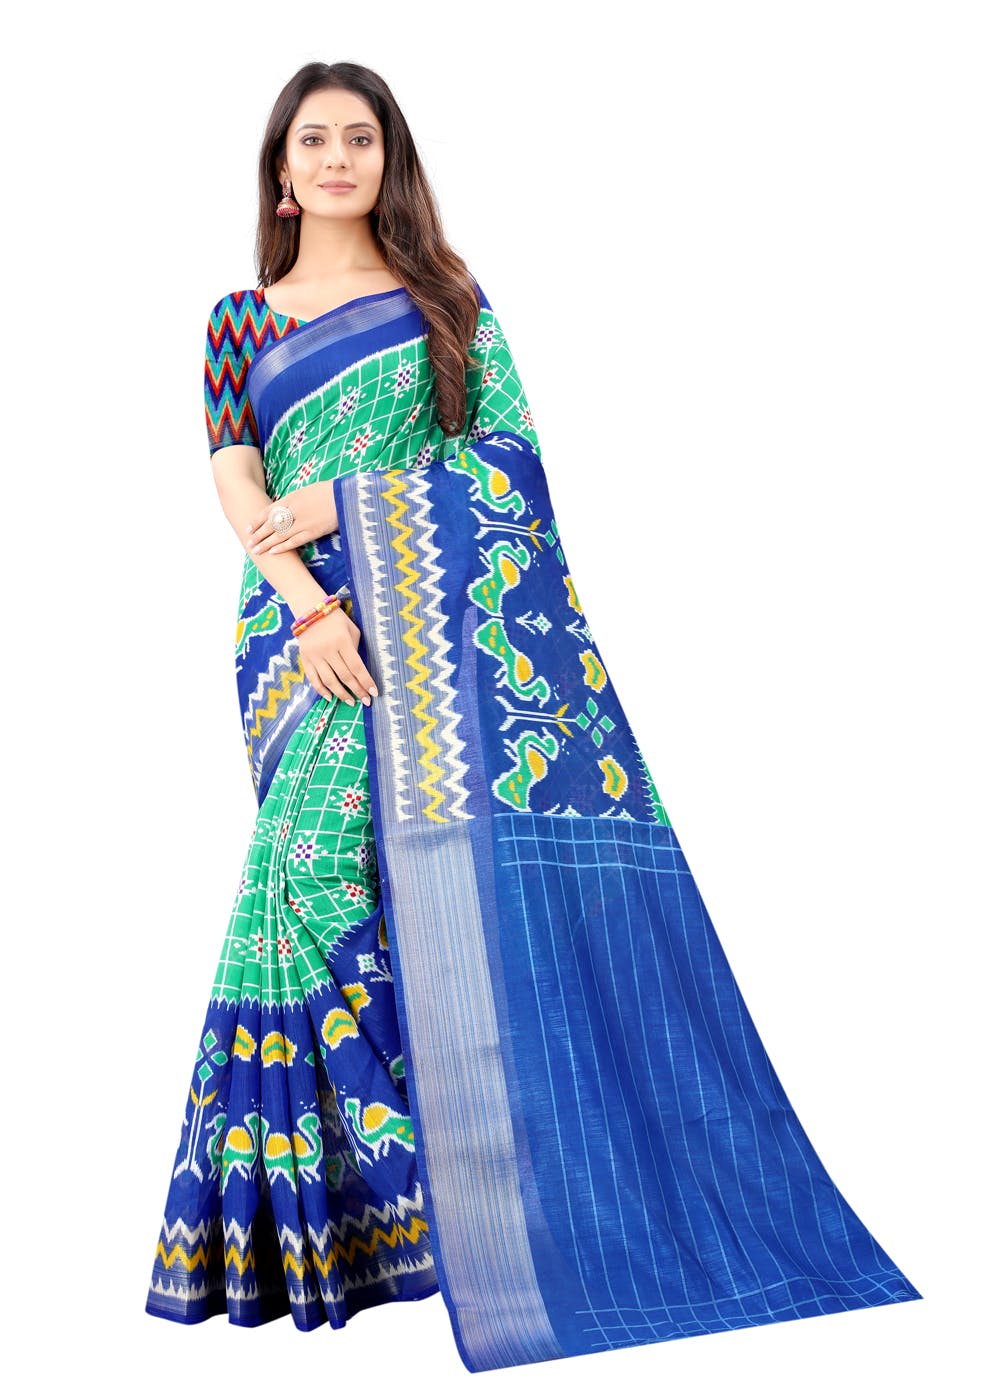 Get Rama & Blue Ikat Pattu Saree at ₹ 799 | LBB Shop